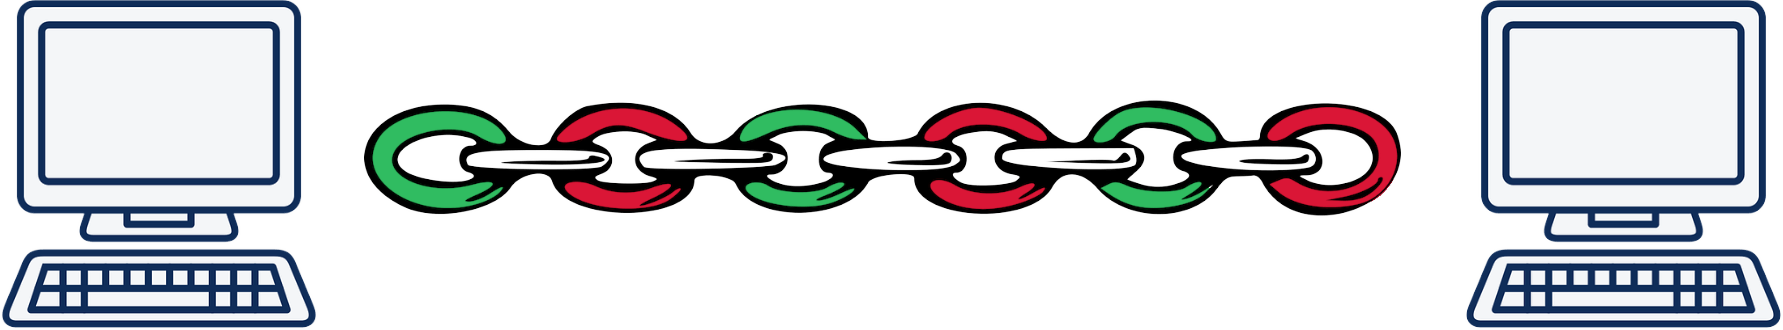 不同颜色的链条代表着不同的链路